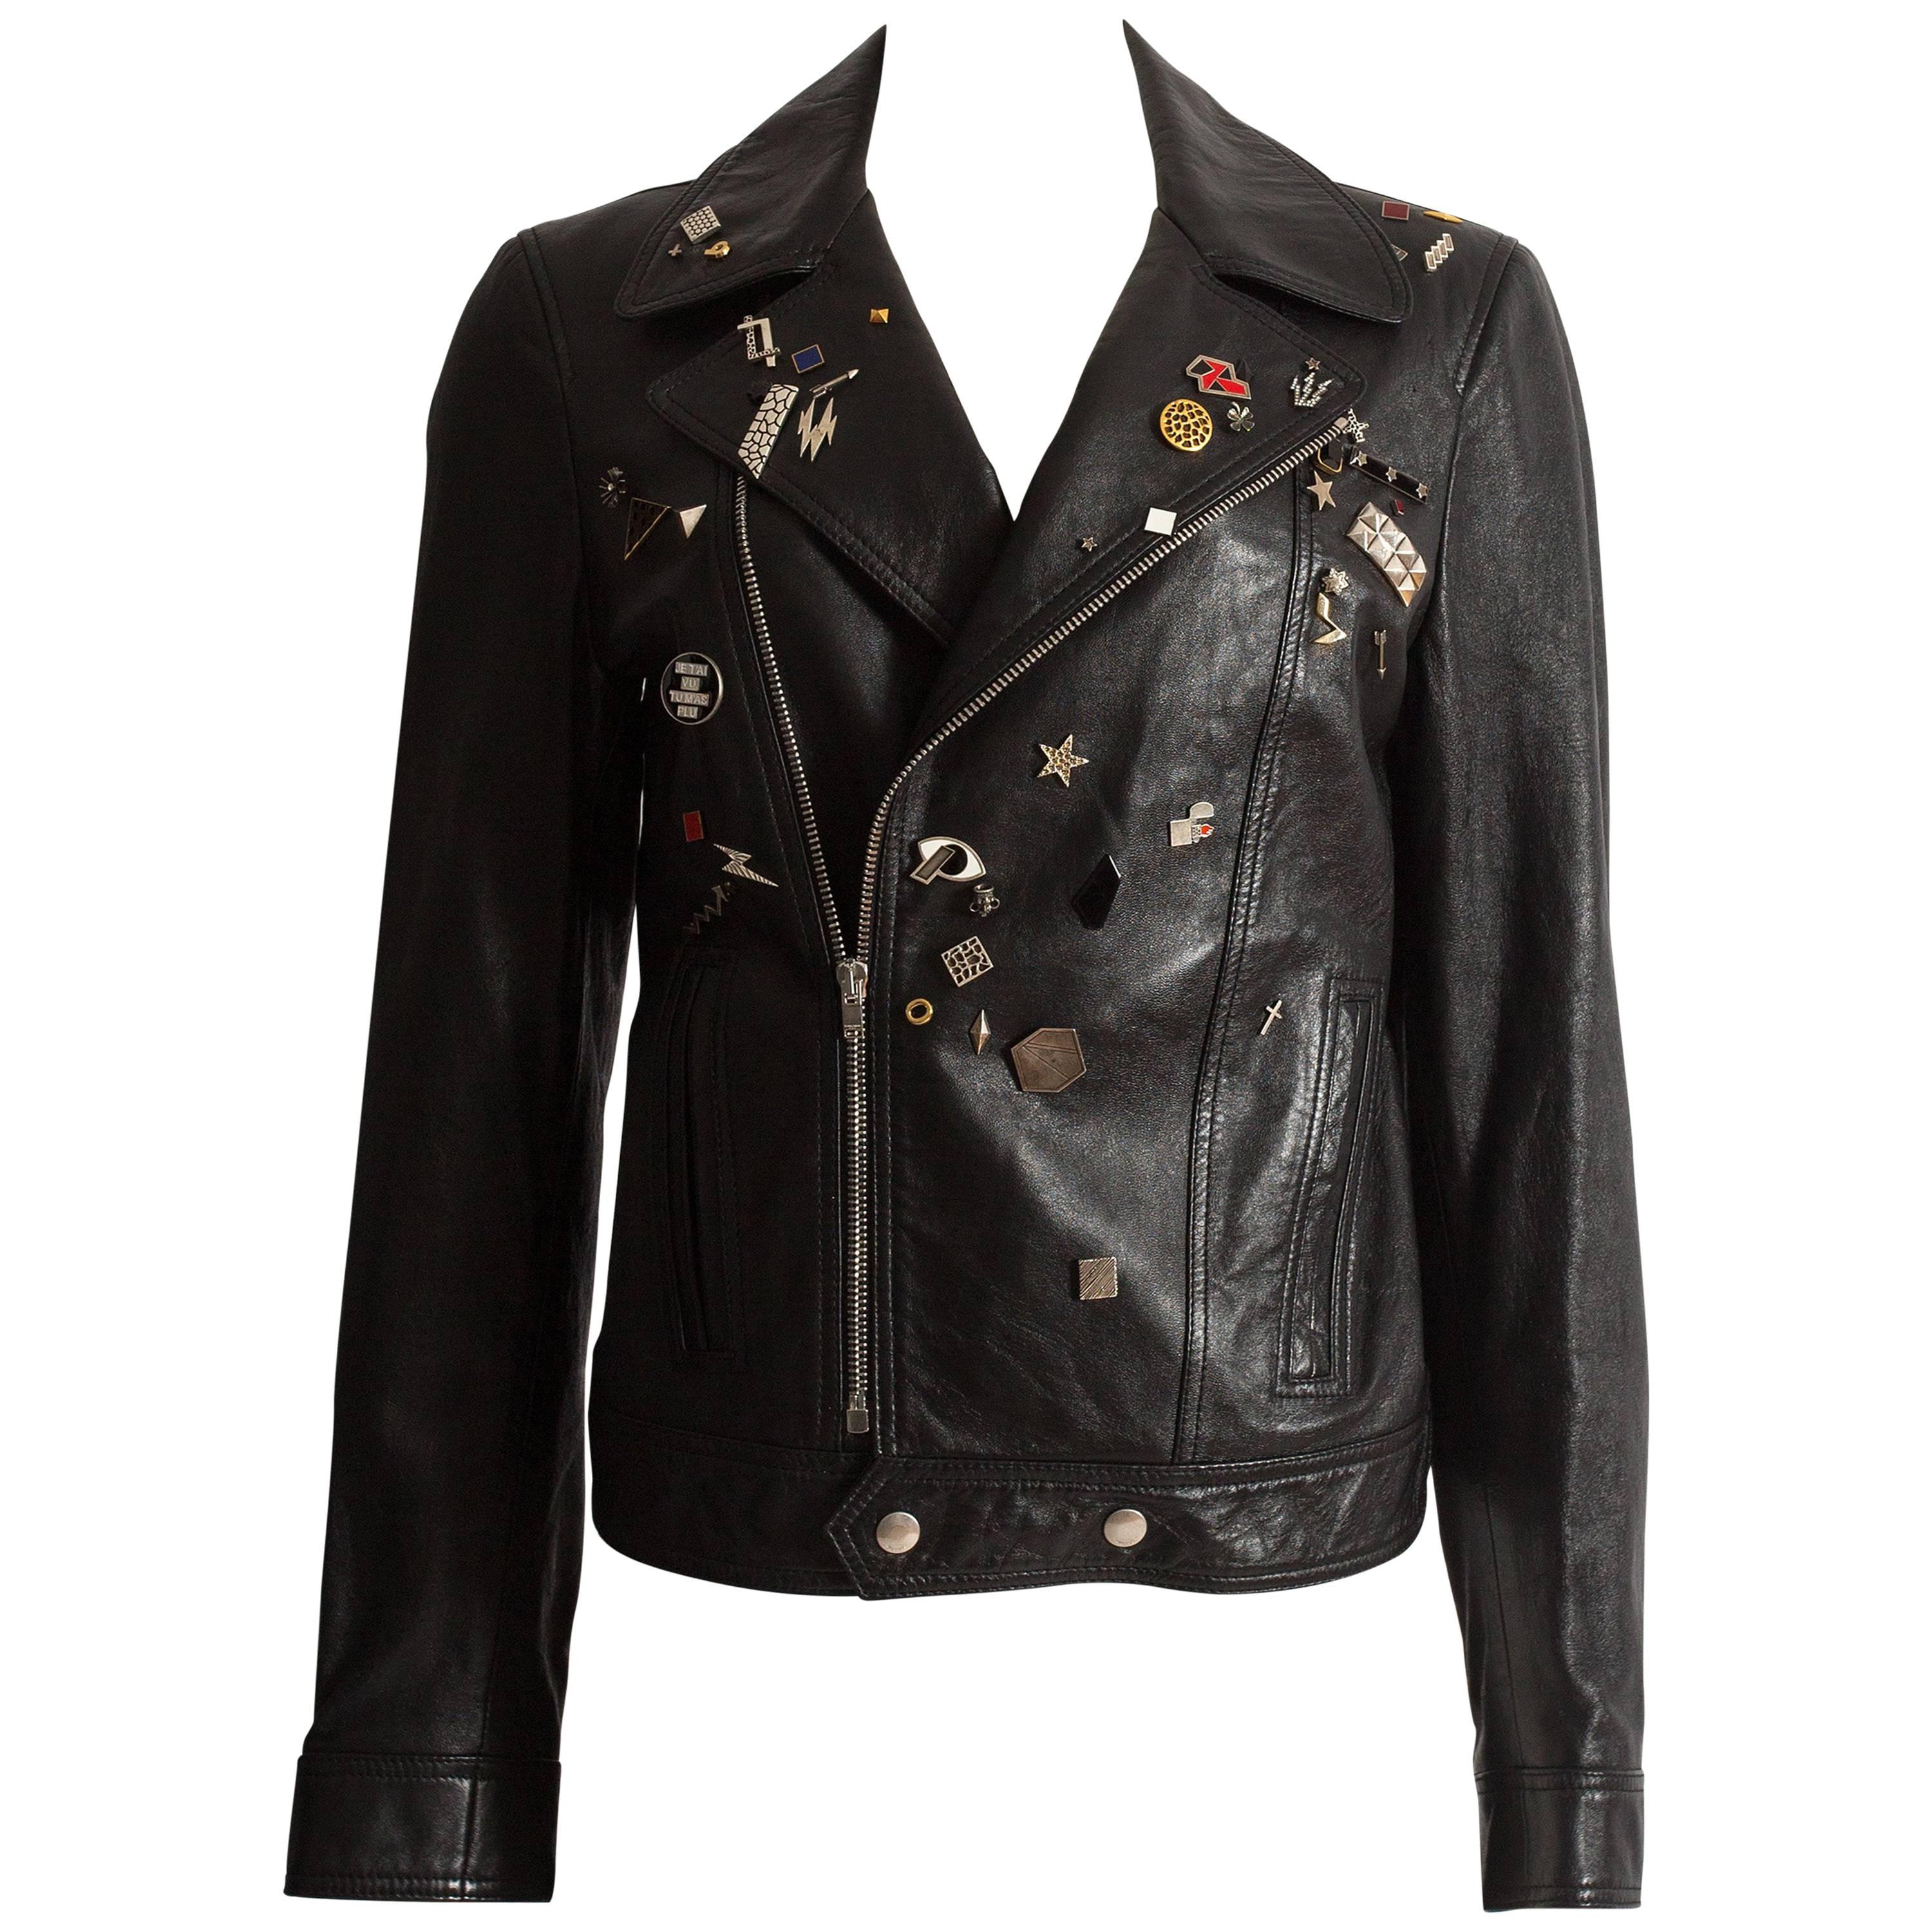 Saint Laurent by Hedi Slimane black leather biker jacket with badges , AW 2015